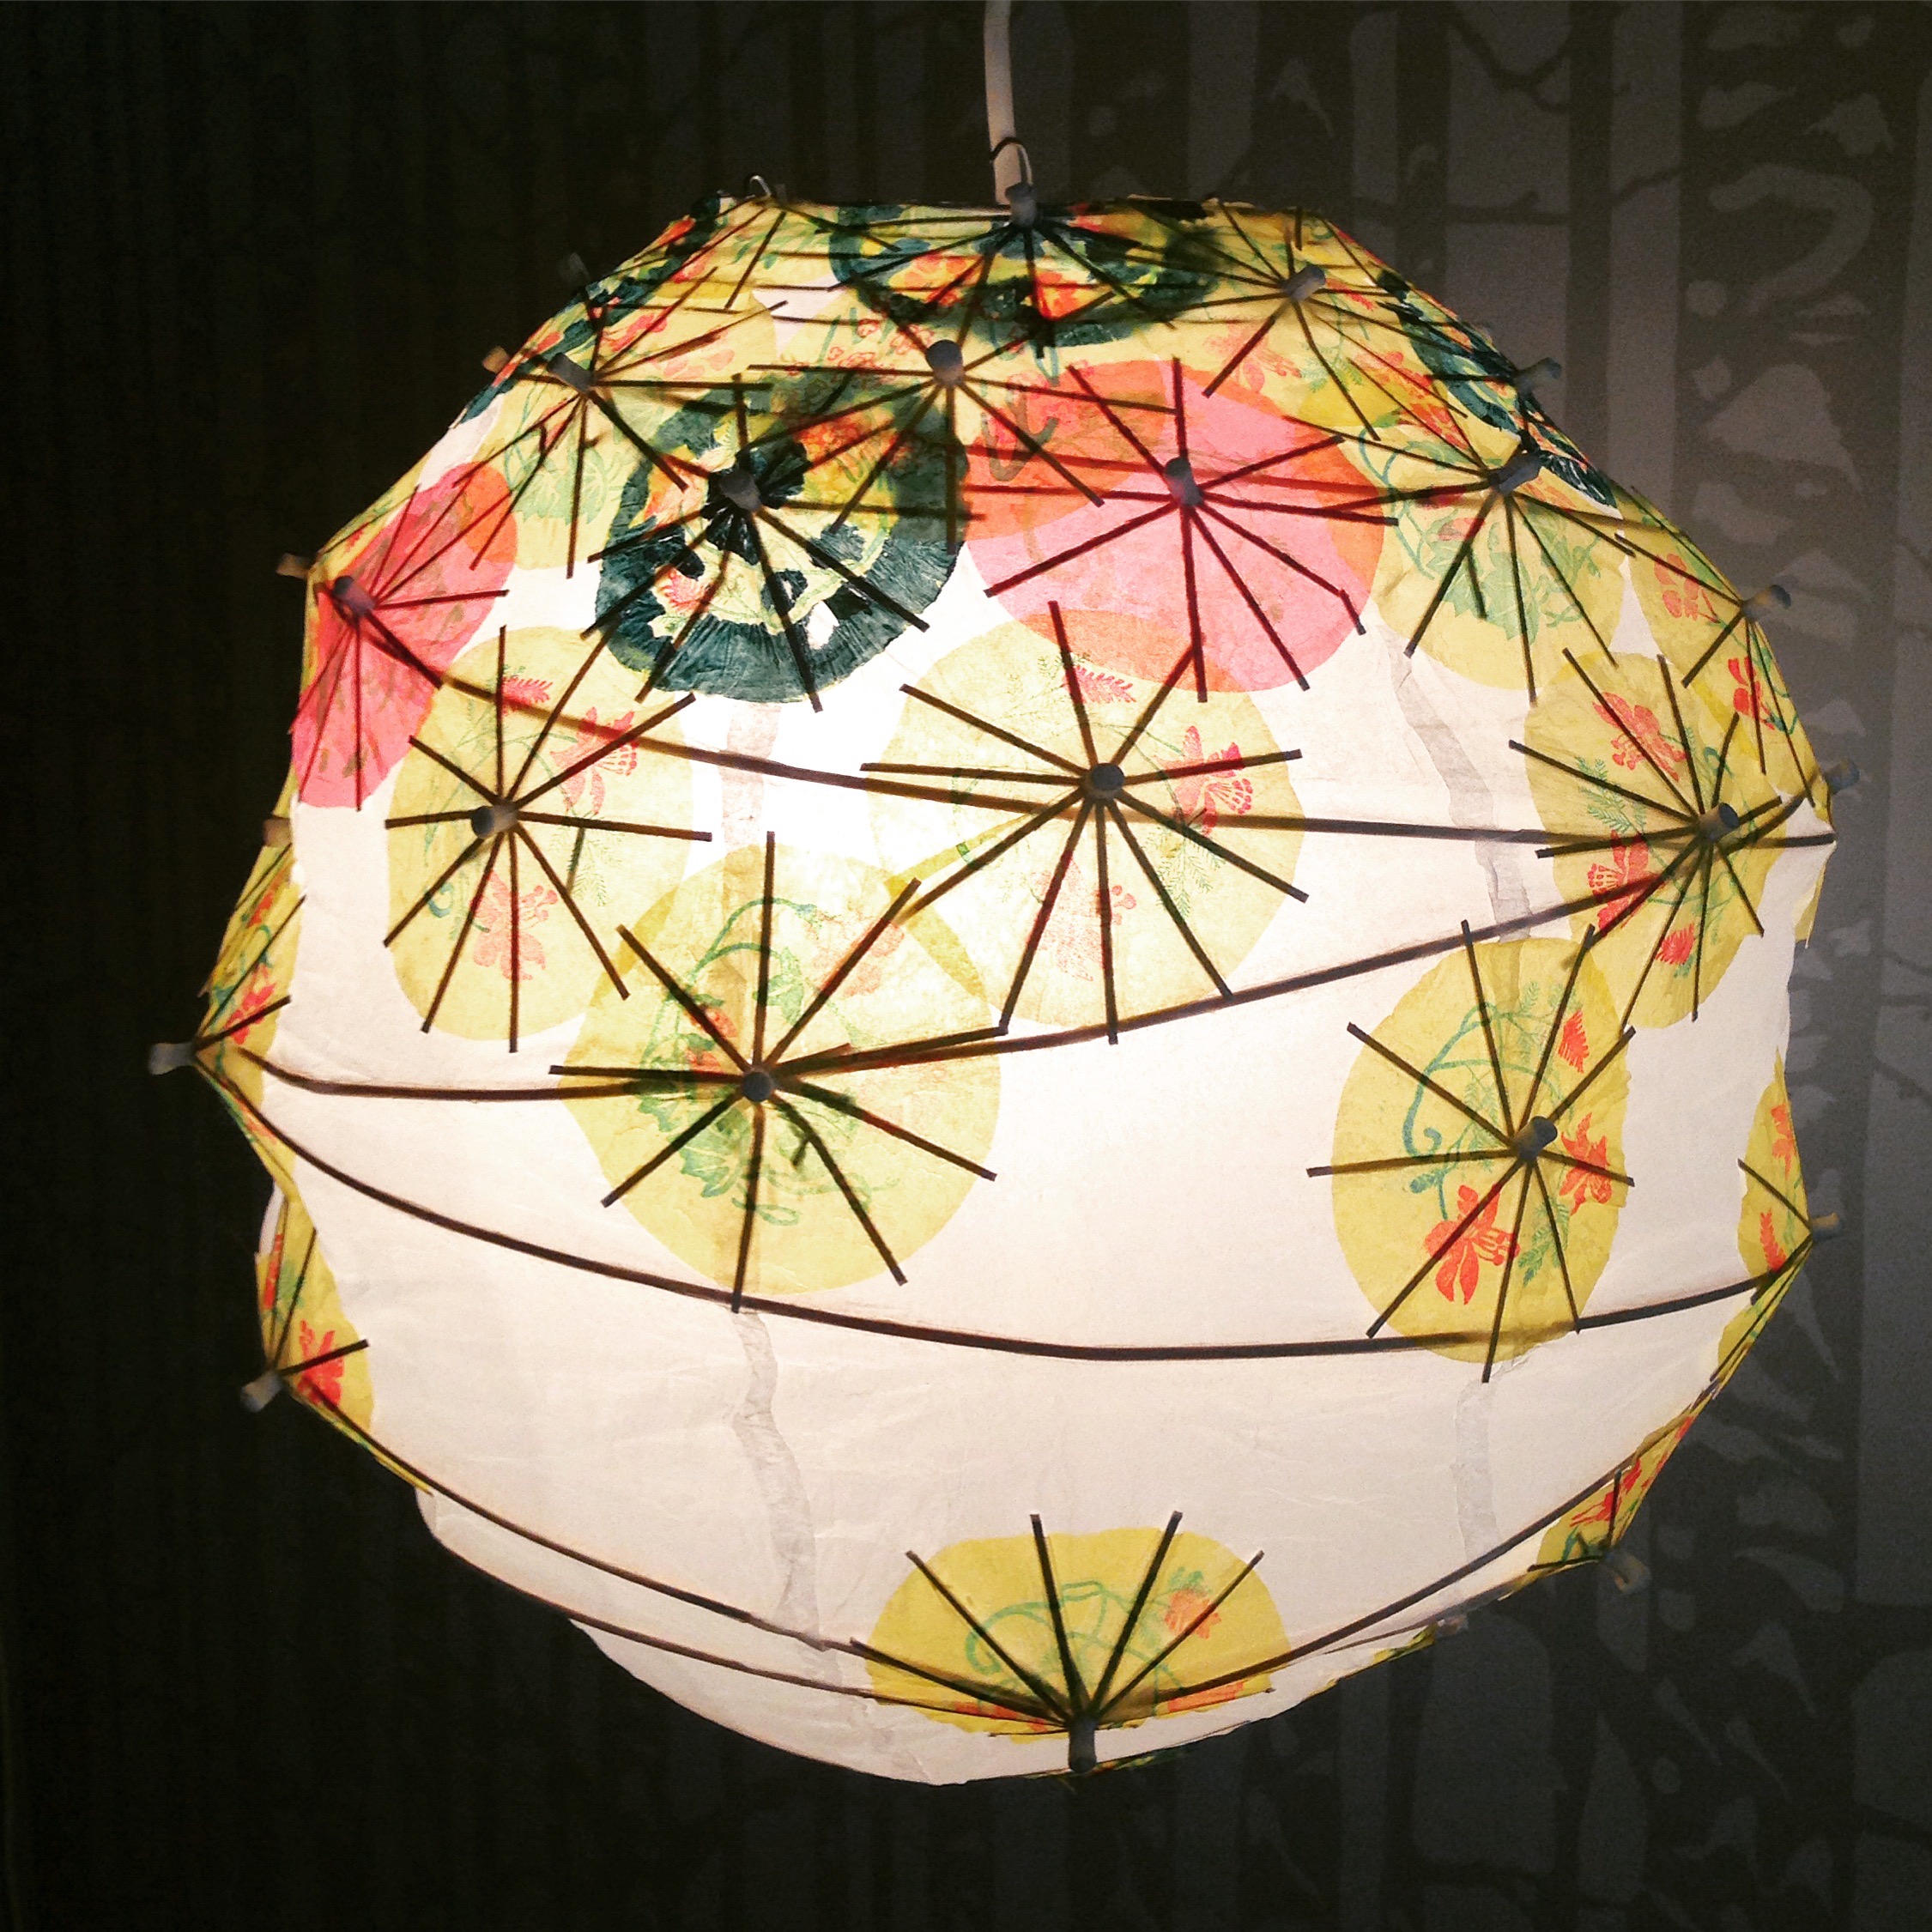 Cocktail Umbrella Lantern (illuminated)